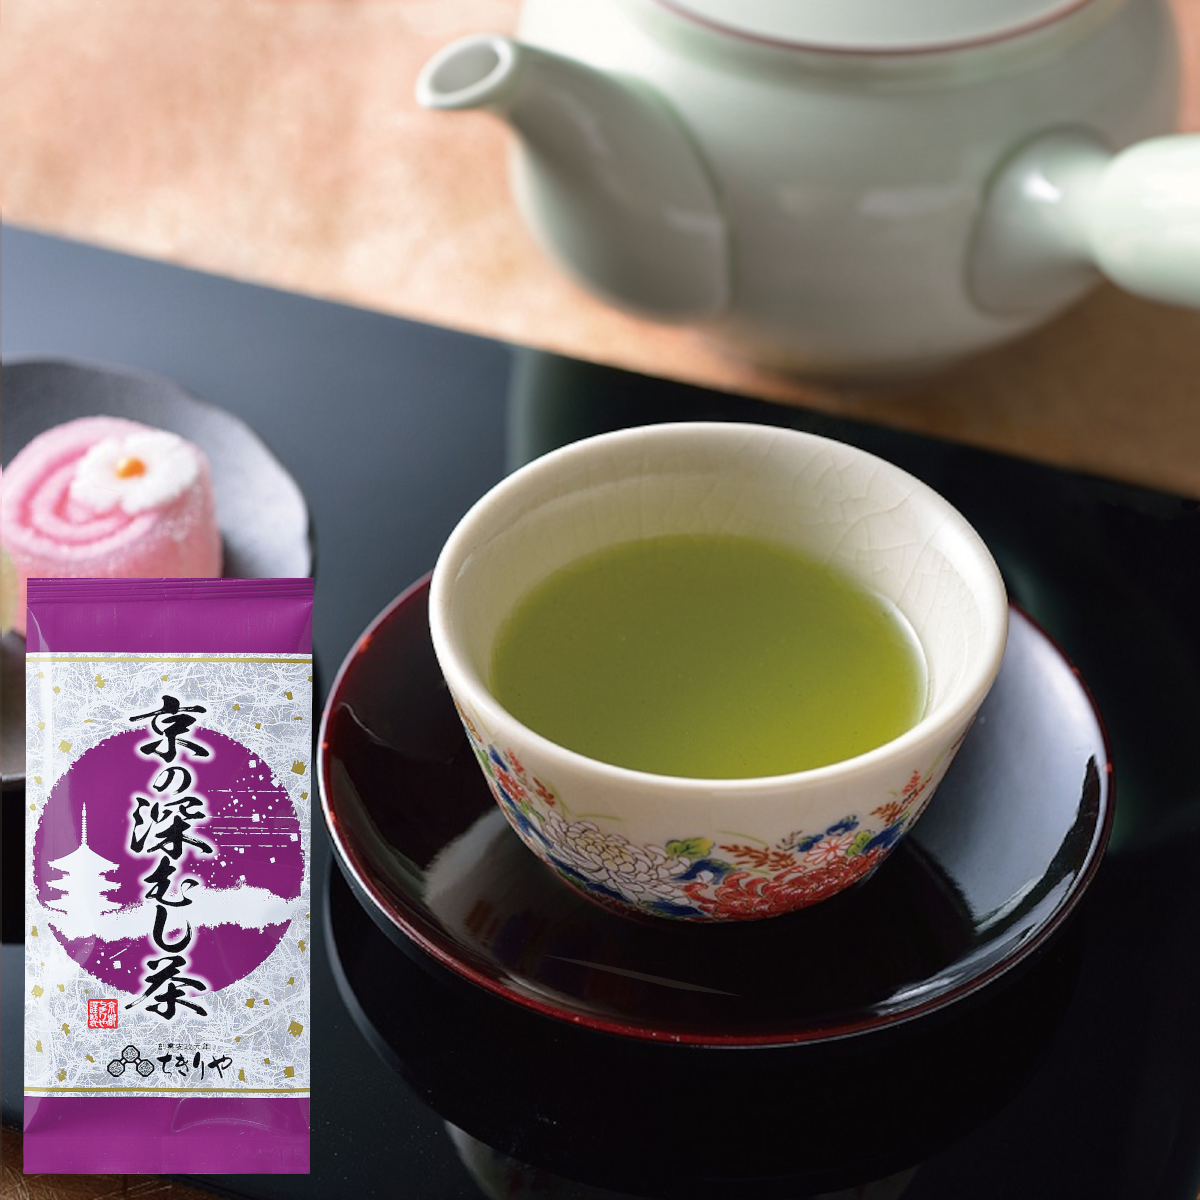 Kyoto Fukamushi Sencha (Deep-steamed Japanese green tea) - 80g tea leaves